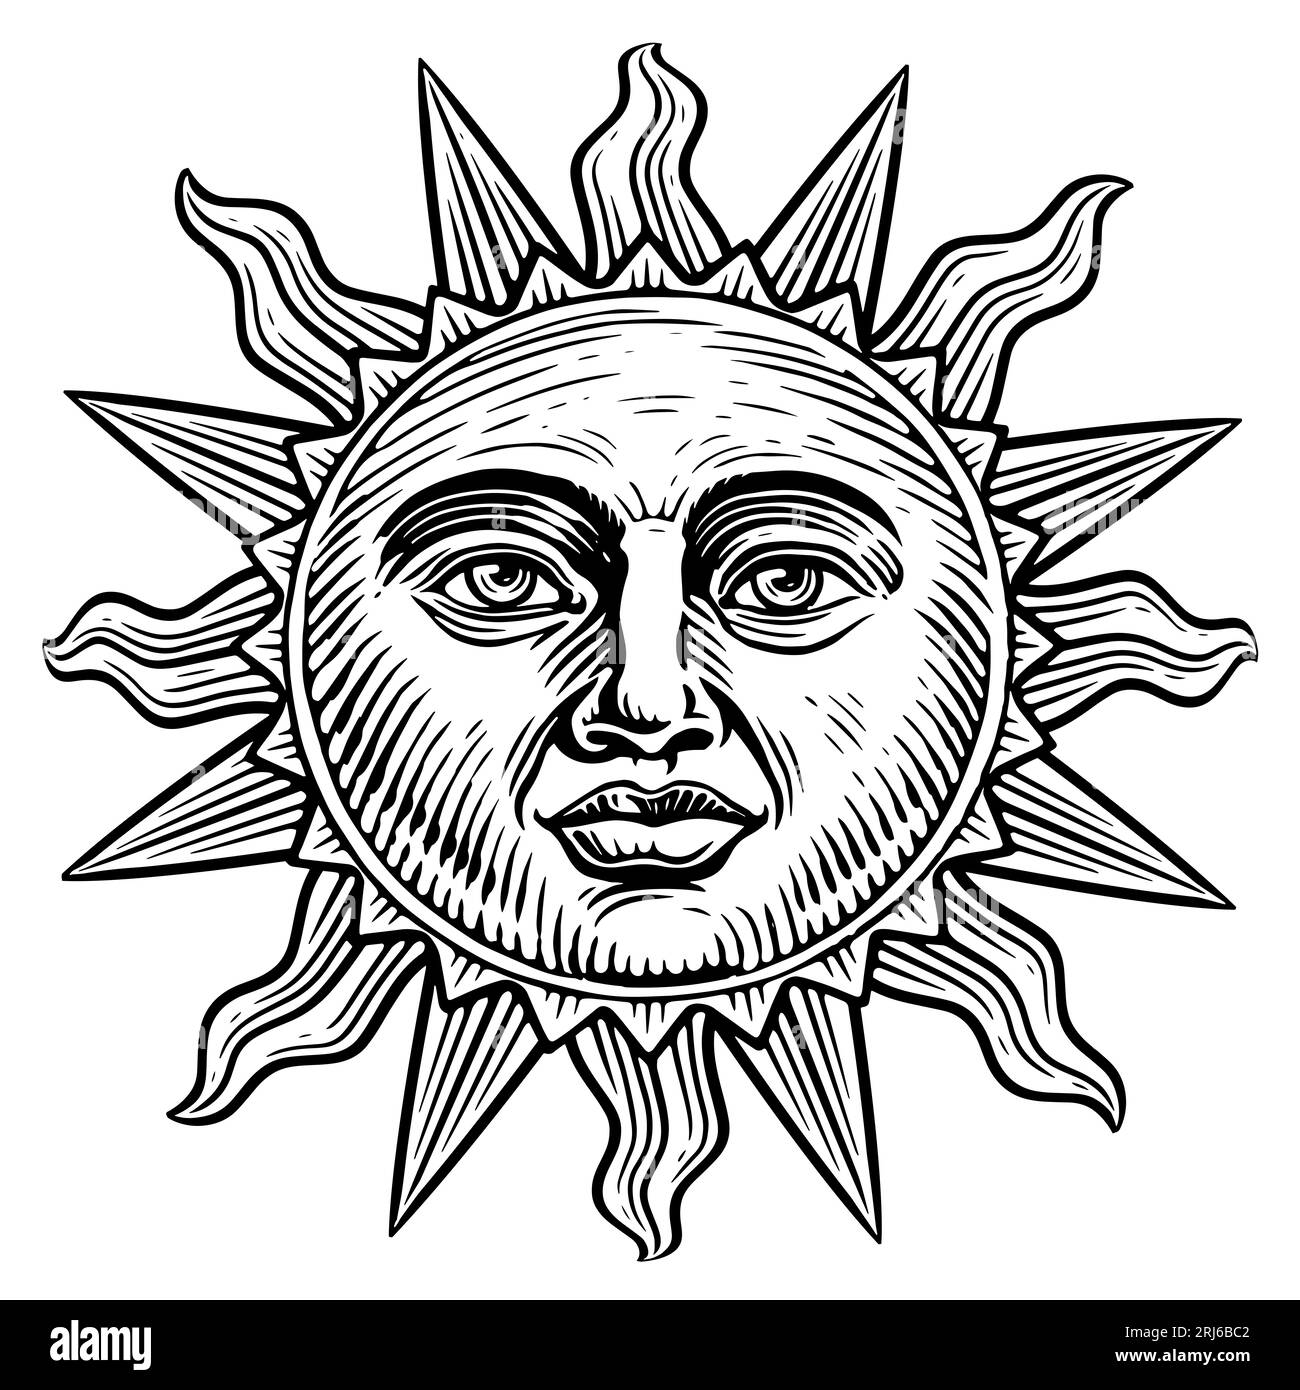 Sonne mit Flächenskizze. Astrologiesymbol. Esoterisches und okkultes Zauberzeichen. Gravur Vintage Illustration Stockfoto